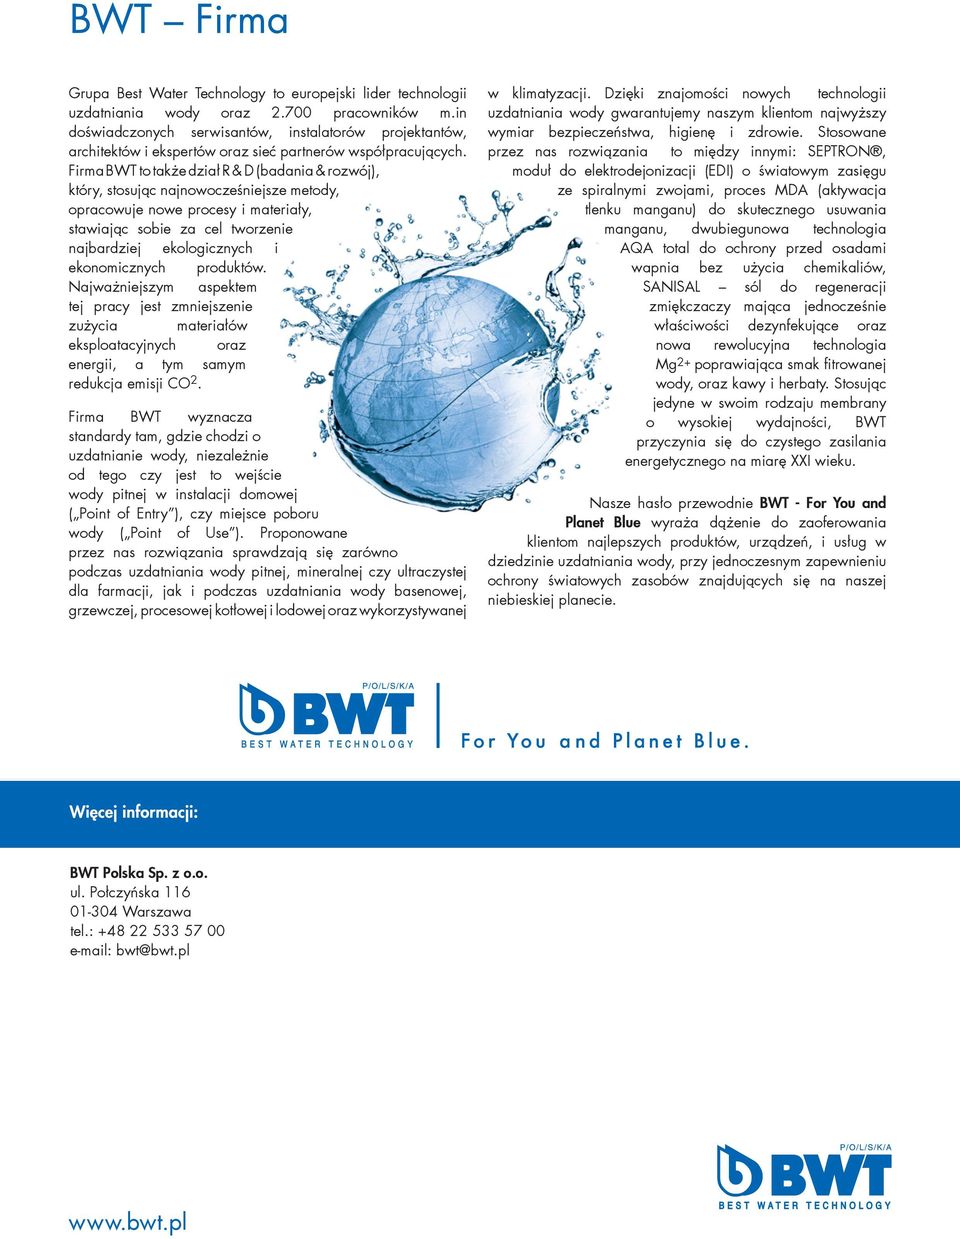 Firma BWT to także dział R & D (badania & rozwój), który, stosując najnowocześniejsze metody, opracowuje nowe procesy i materiały, stawiając sobie za cel tworzenie najbardziej ekologicznych i